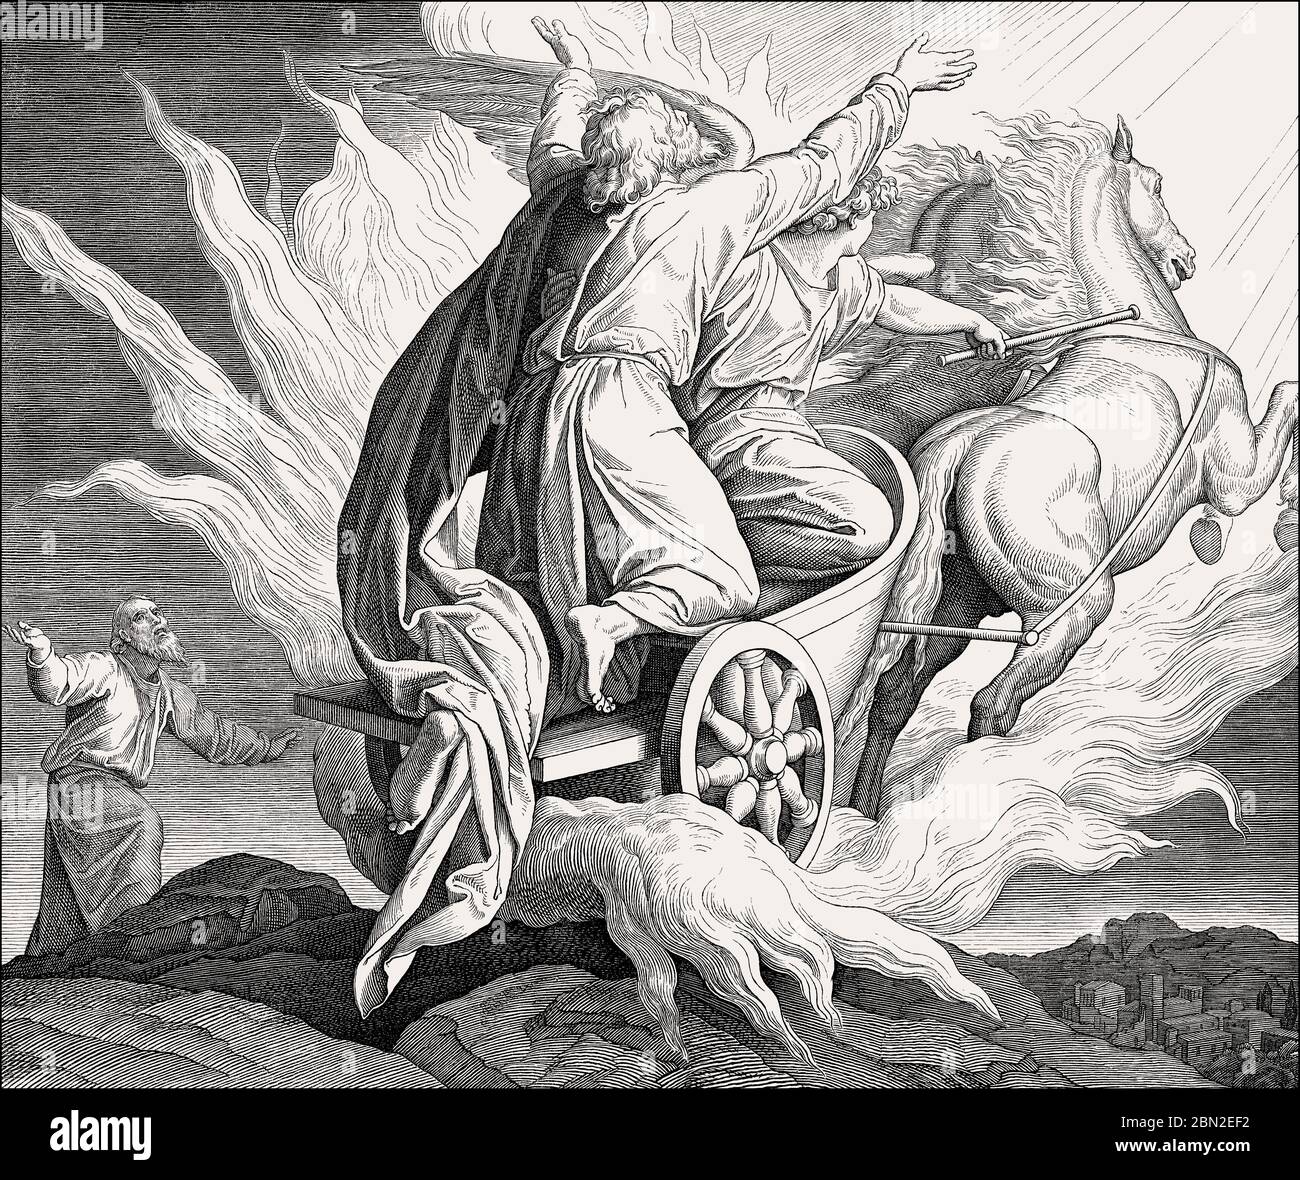 Le prophète Elijah, qui traverse un char flamboyant dans le ciel, dans l'ancien Testament, par Julius Schnorr von Carolsfeld Banque D'Images